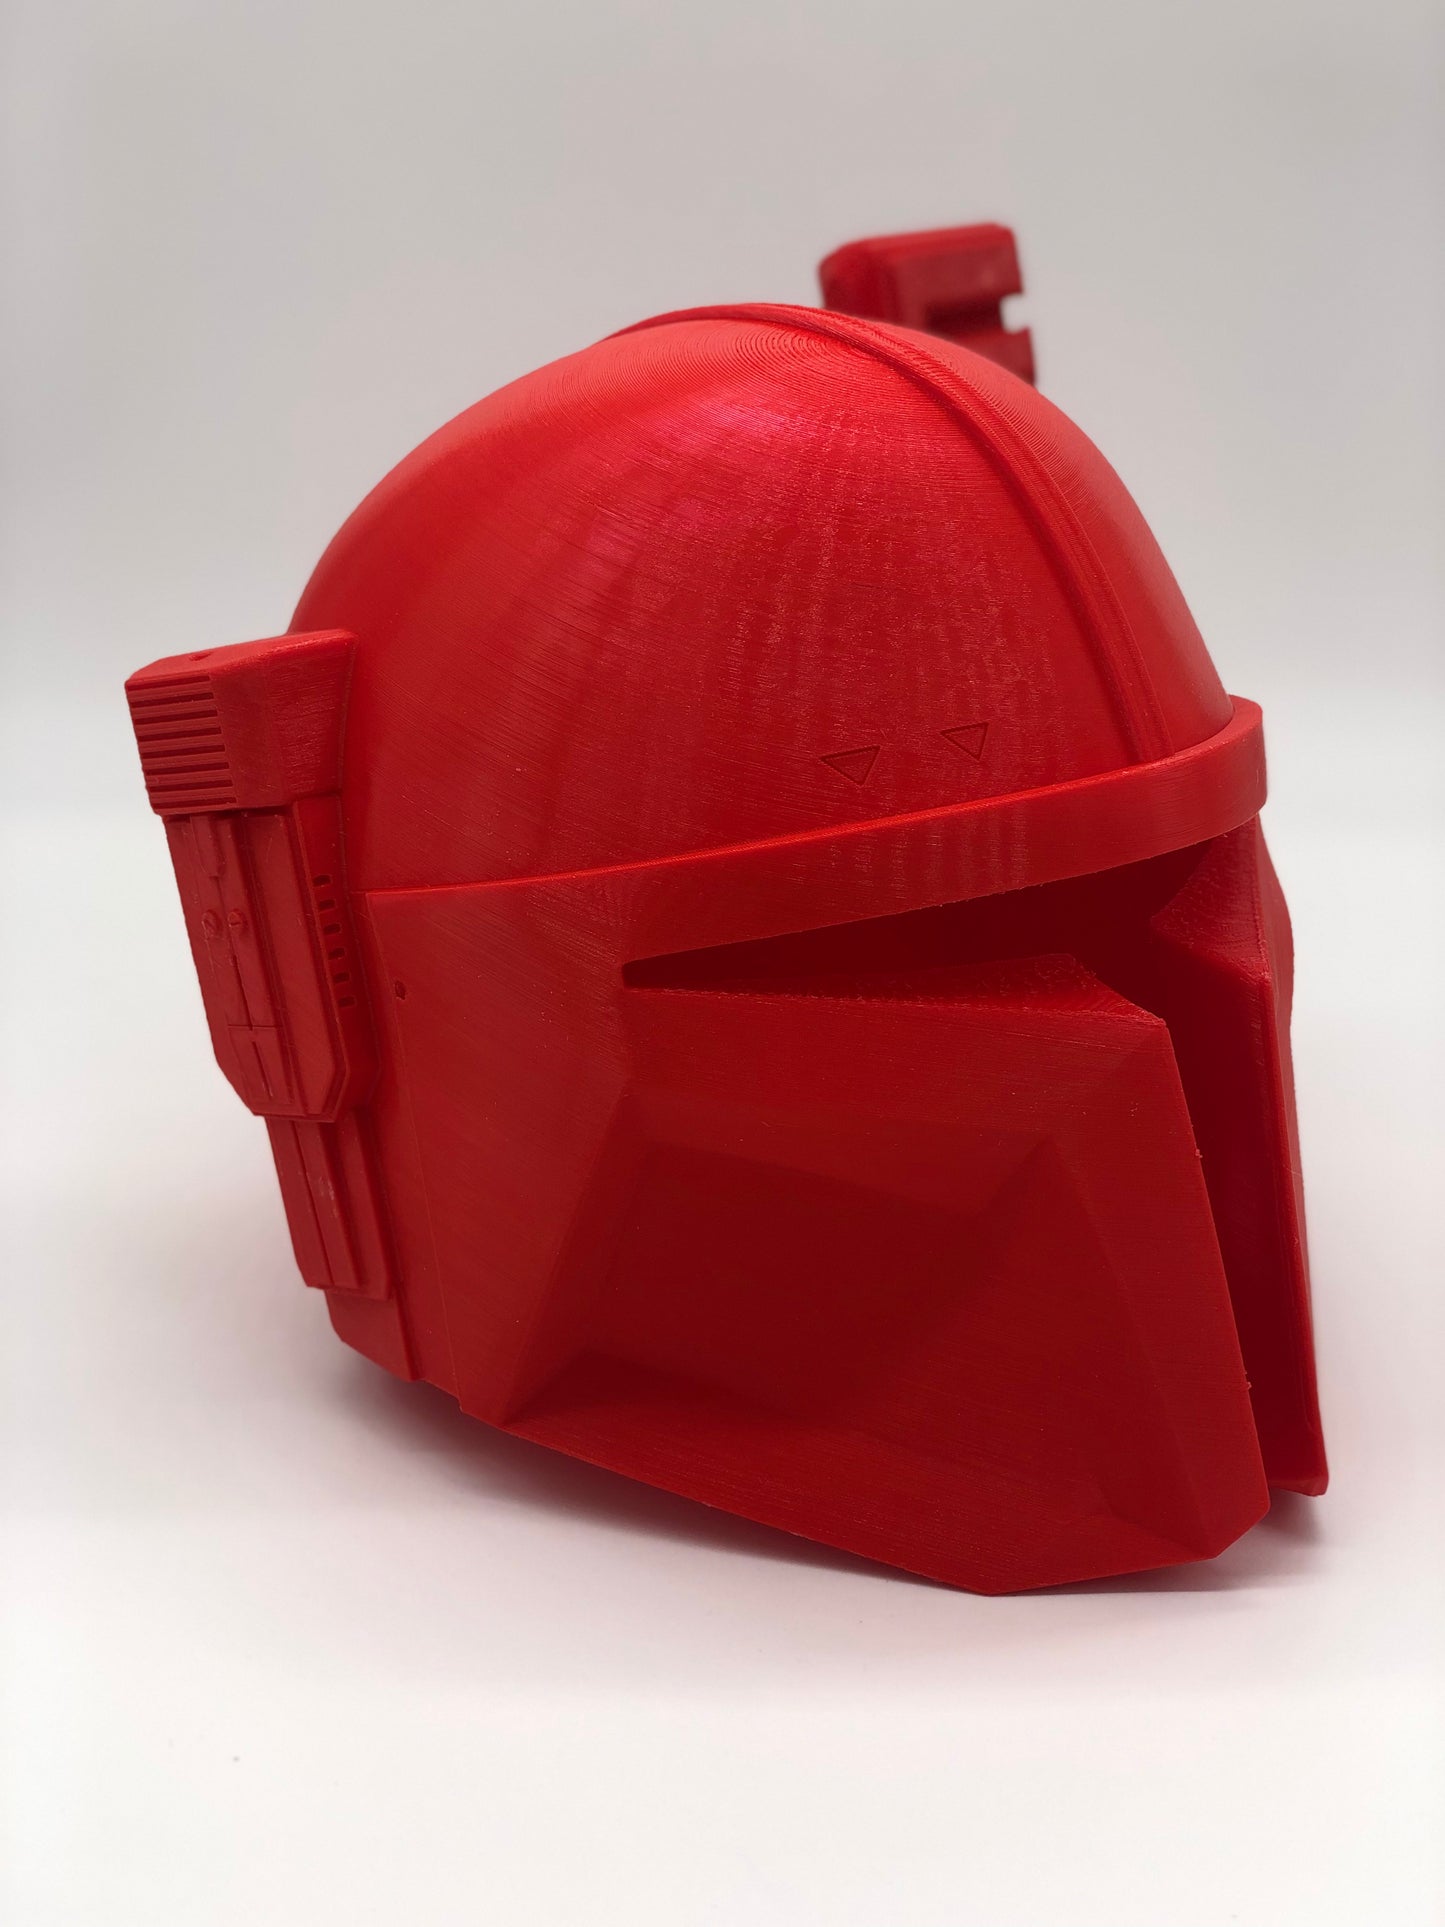 Mandalorian Heavy Infantry Wearable helmet